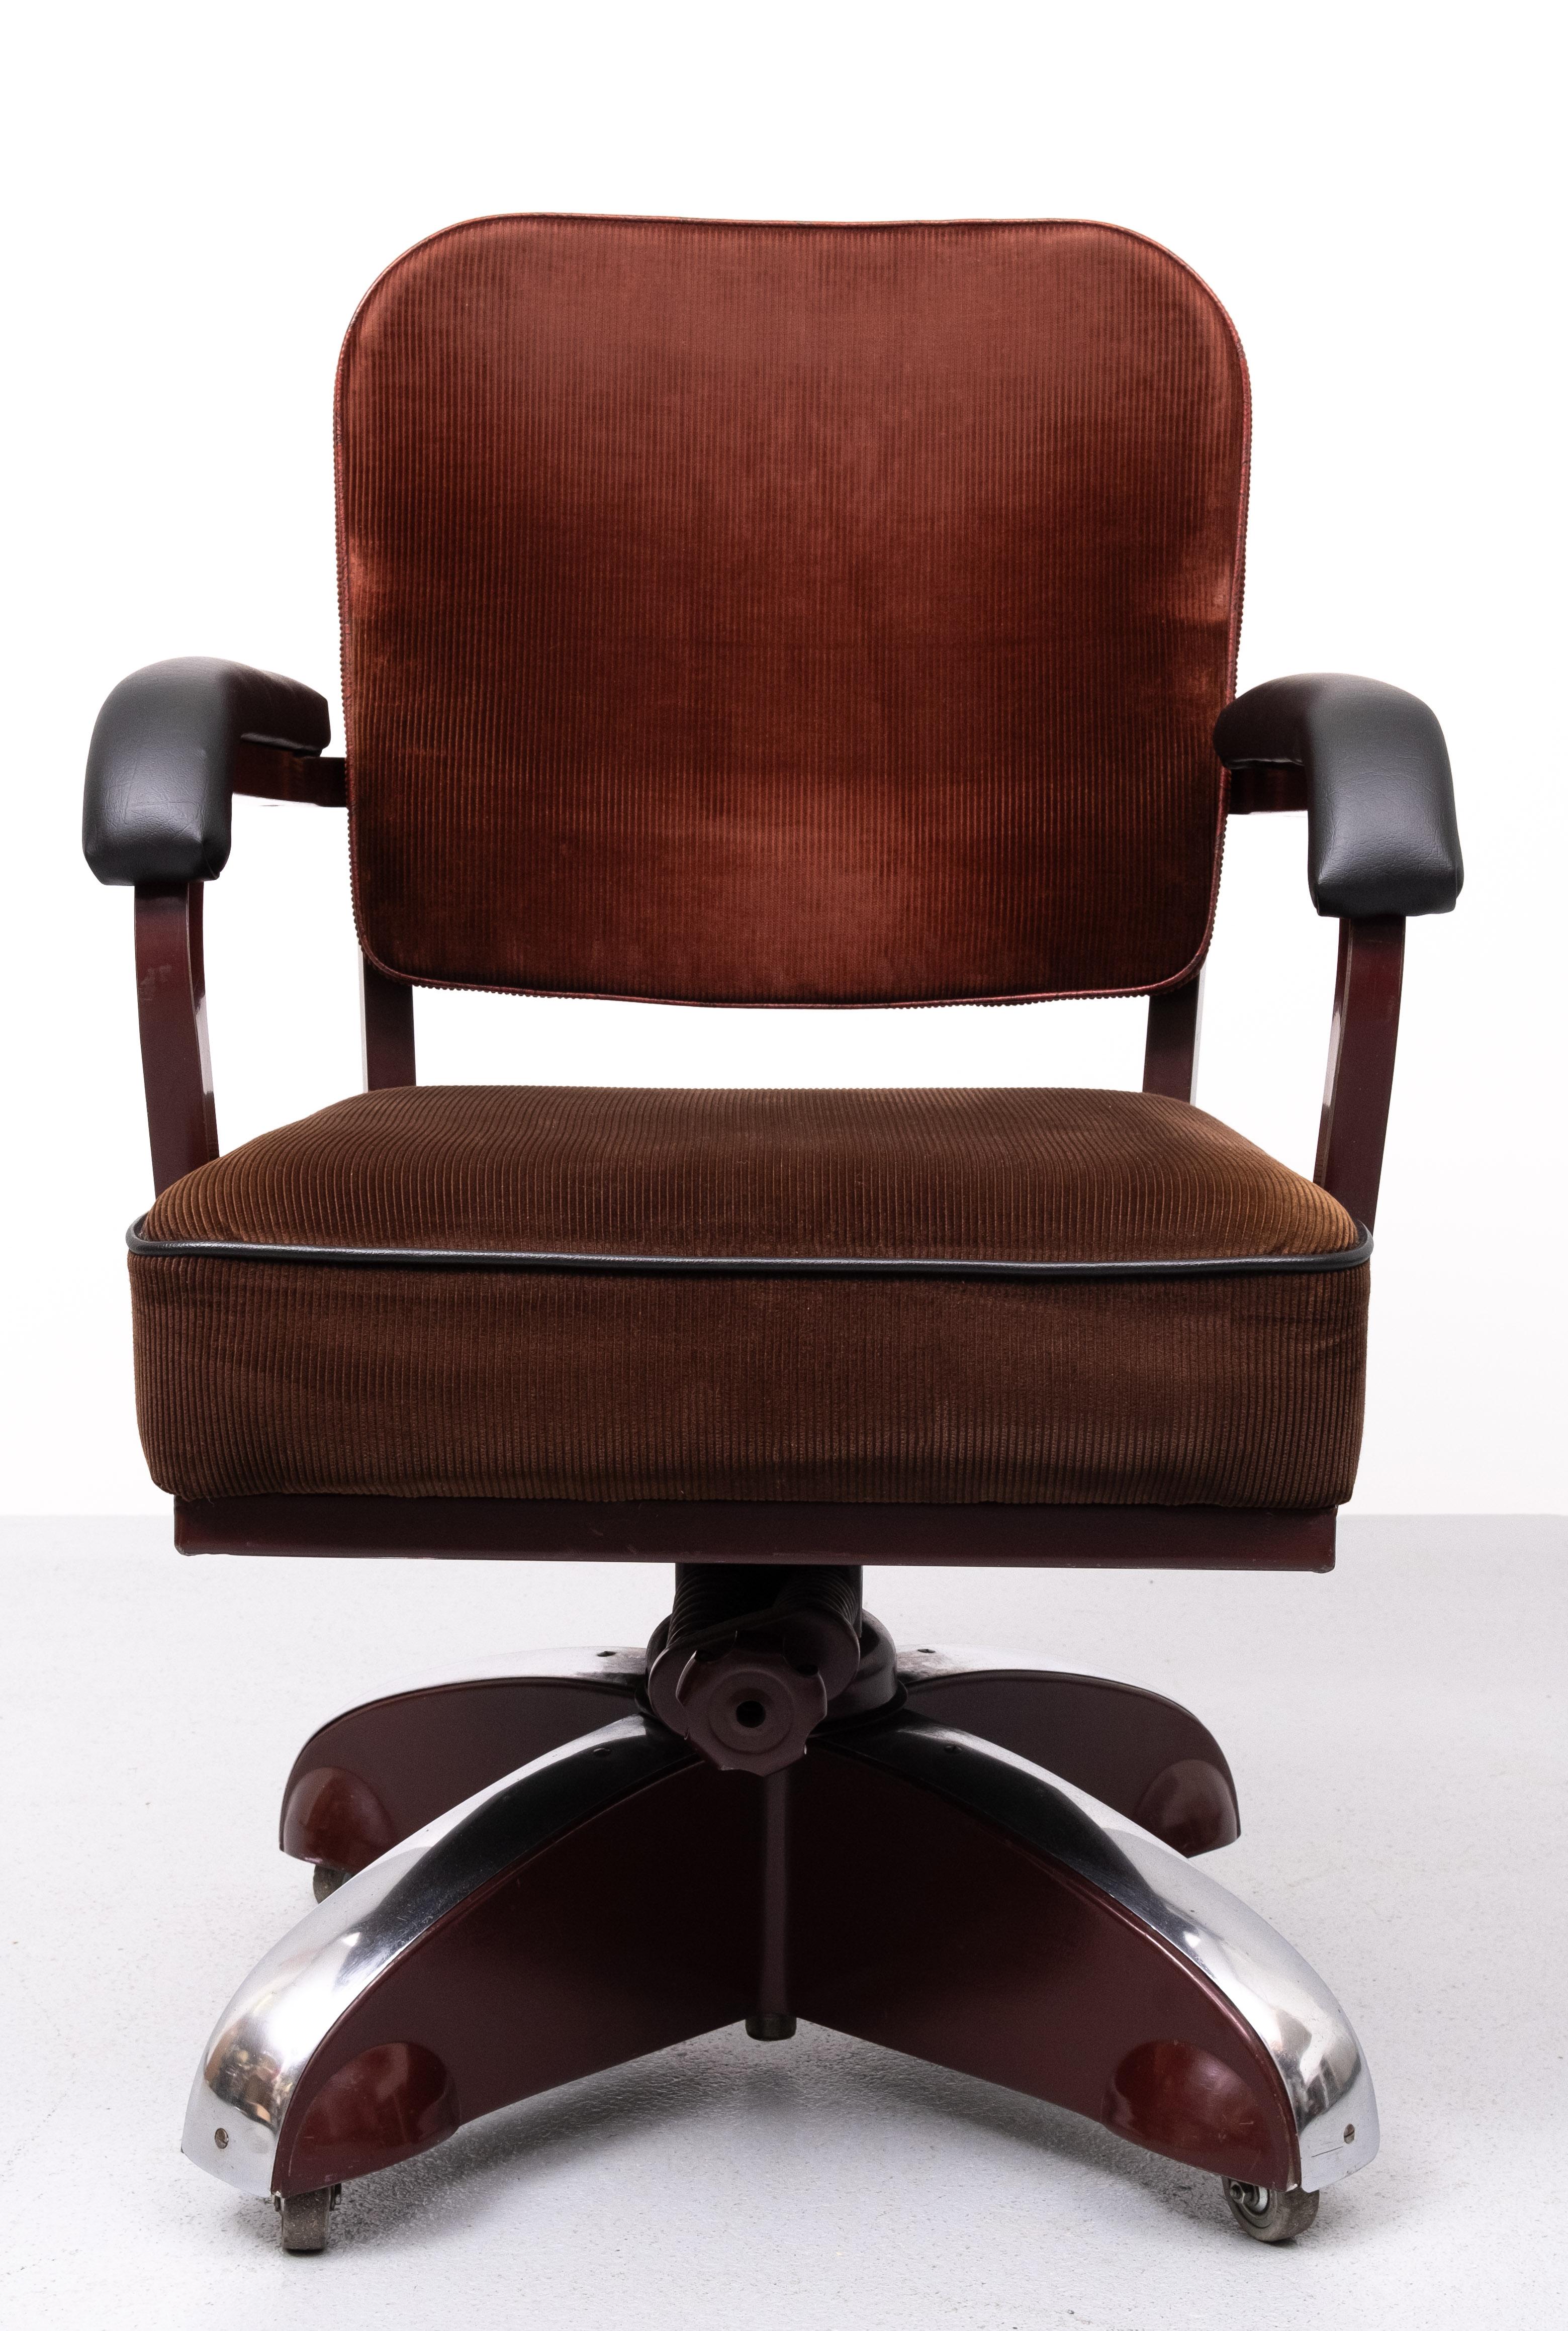 Magnifique fauteuil de bureau à roulettes en velours rouge, modèle ''KIngpin'' d'Ahrend de Cirkel, sur châssis en métal émaillé bordeaux avec accoudoirs en cuir noir et accents chromés. En état d'origine avec une usure modérée correspondant à l'âge